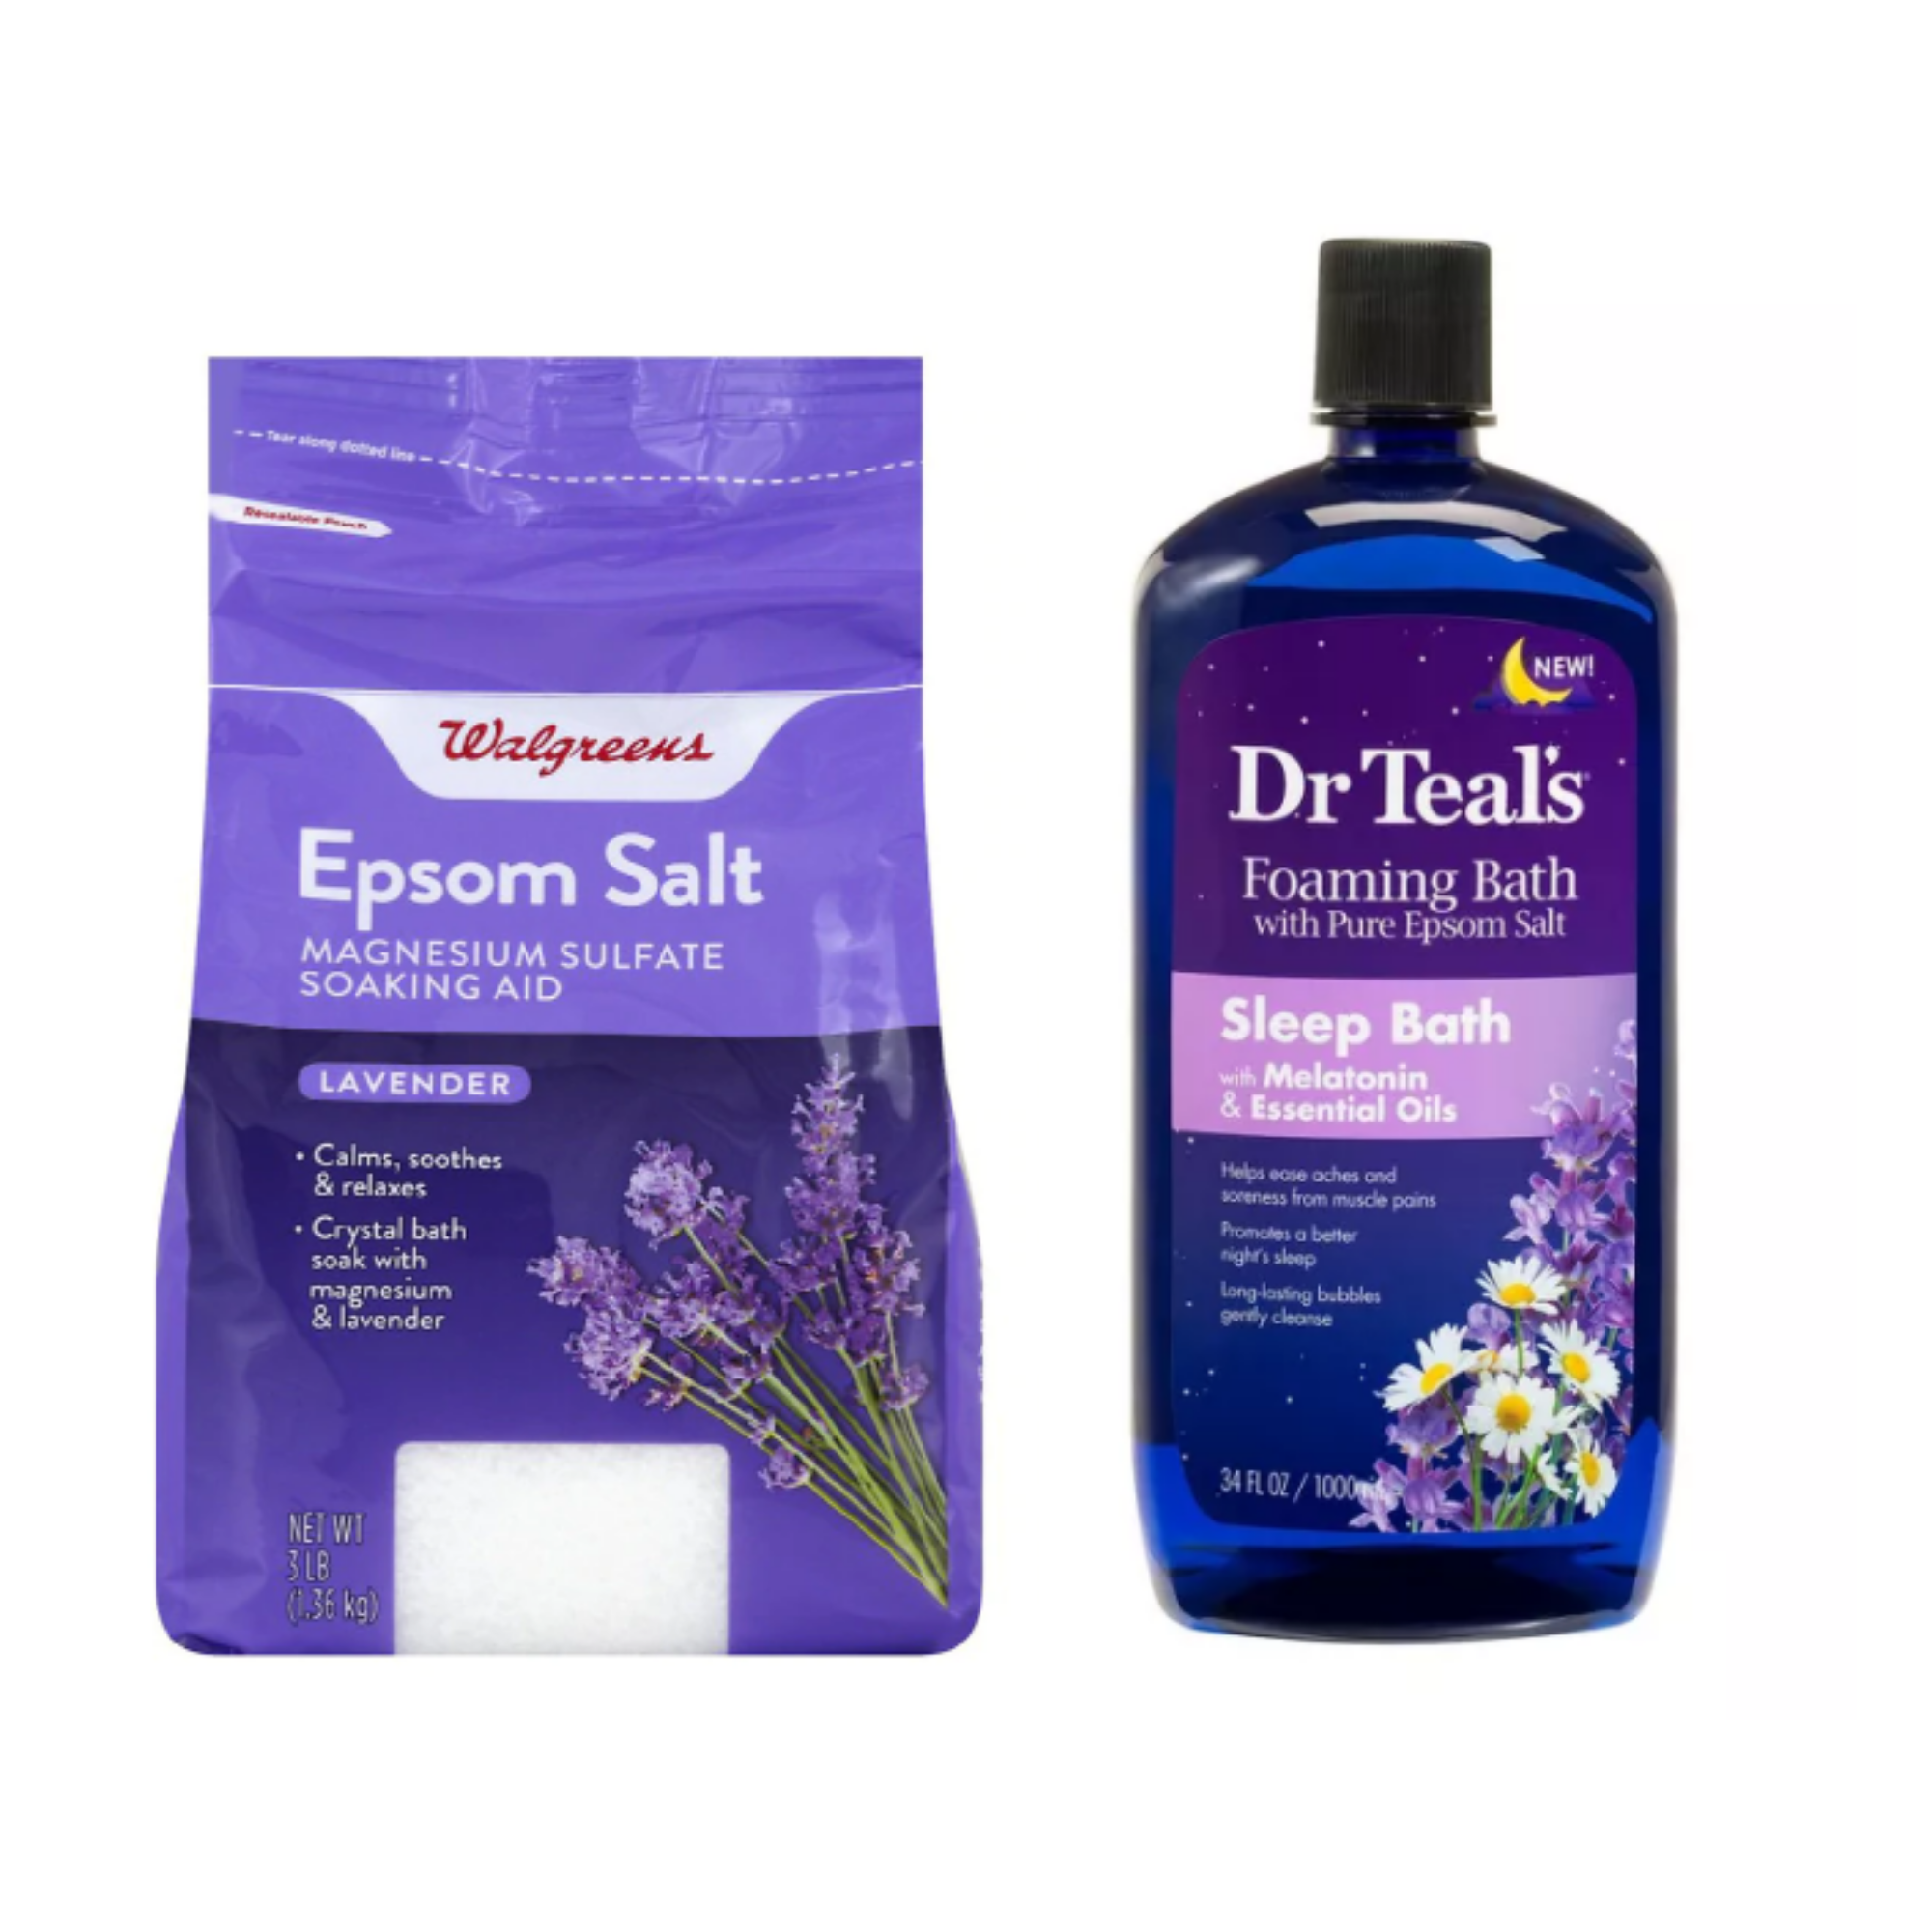 Sleepy Bathtime; Epsom Salt $1.99 and Dr. Teal's Sleep Bath $4.89